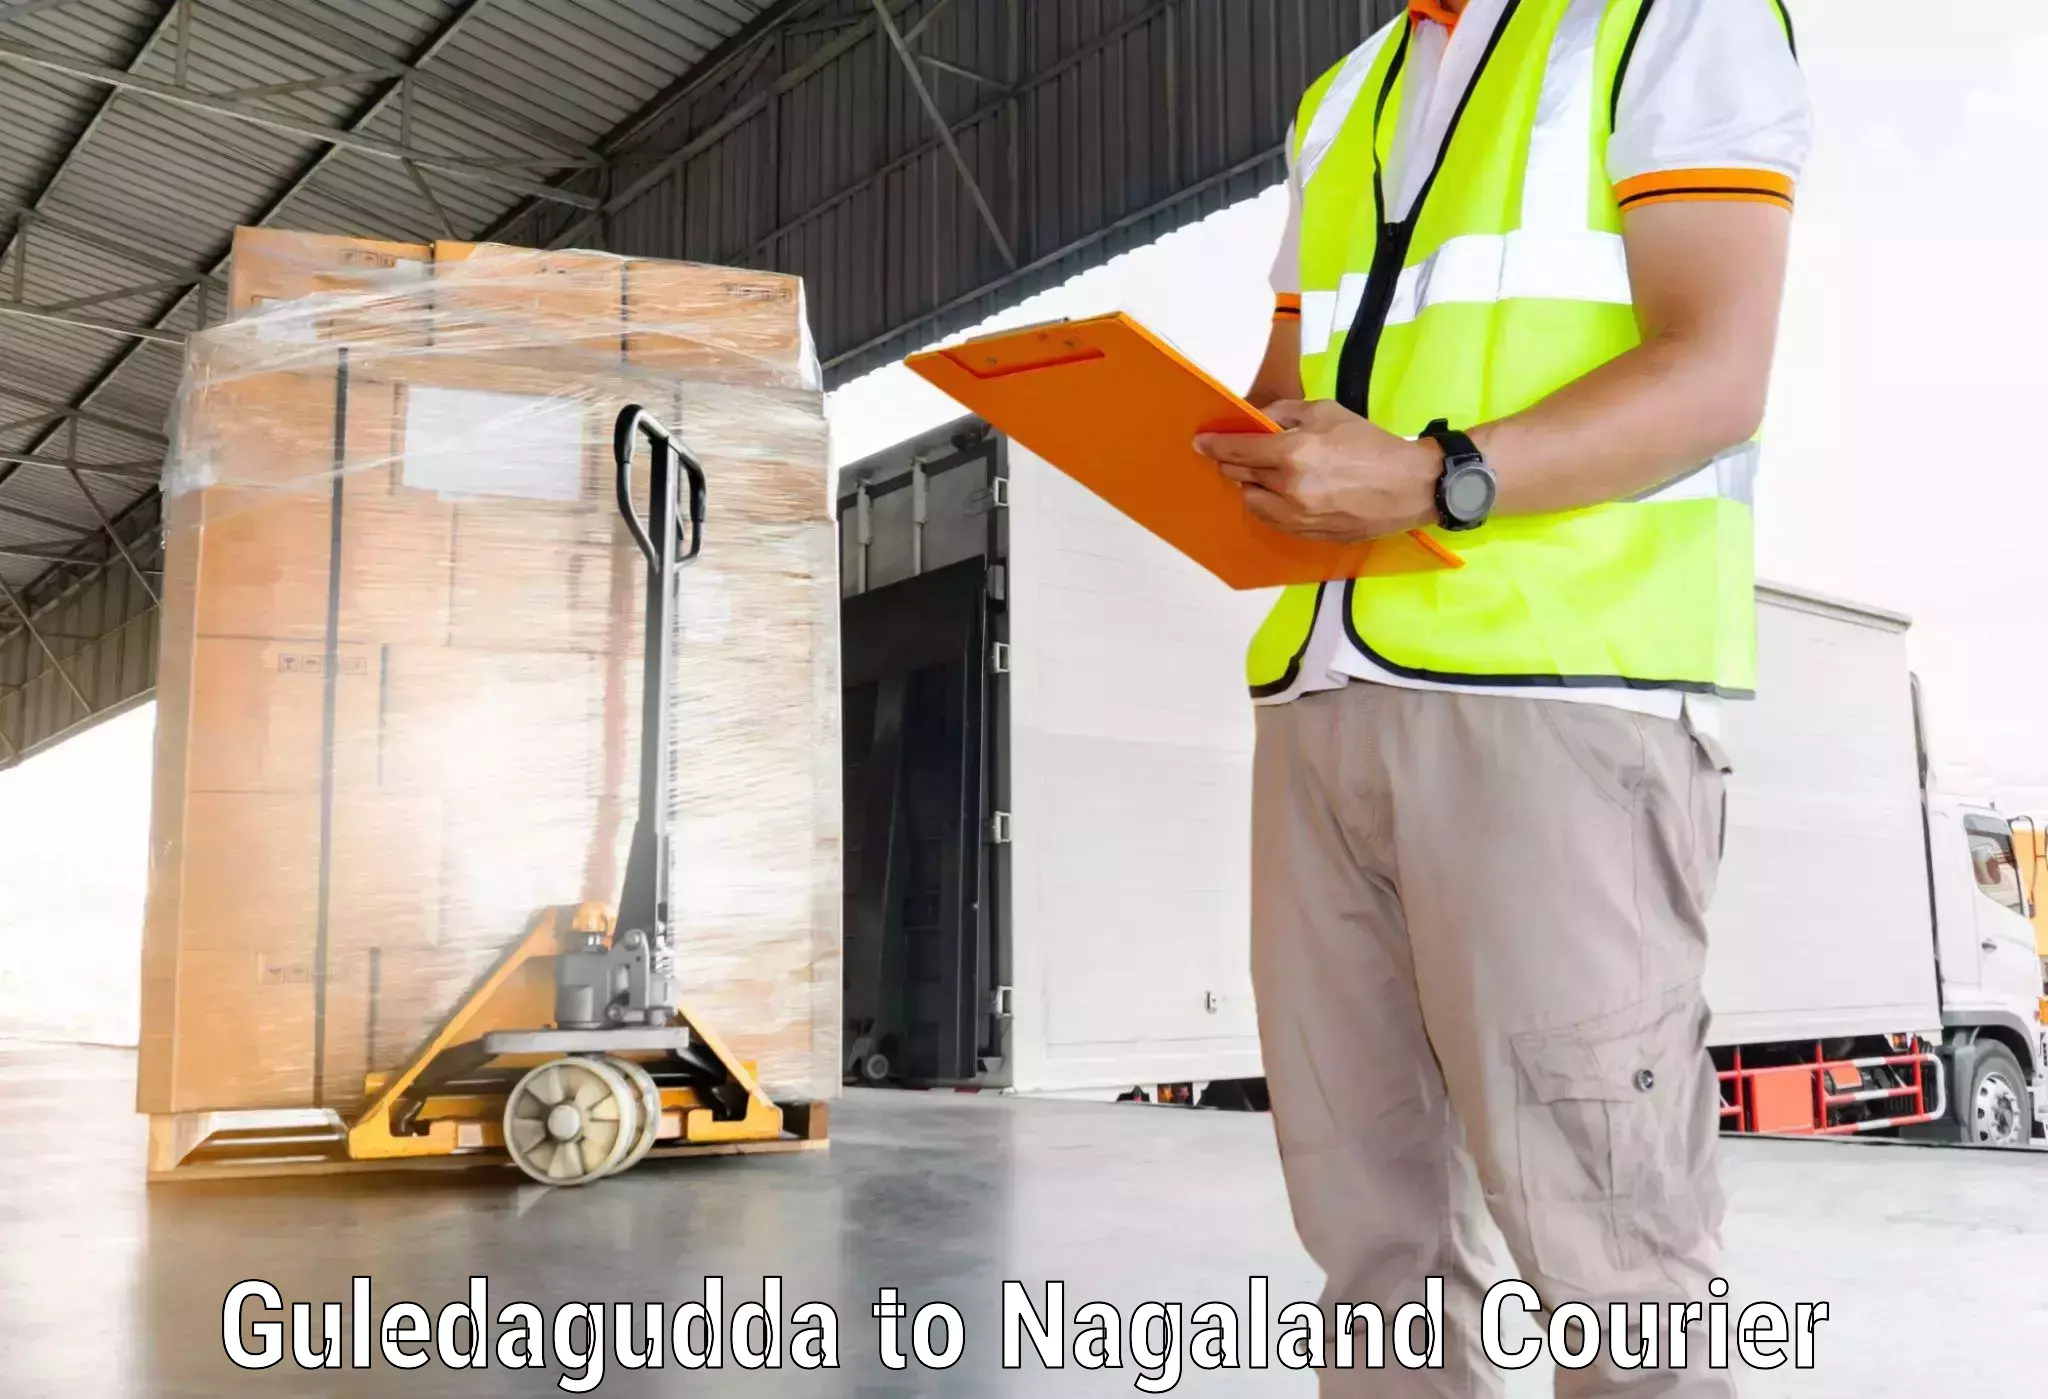 Medical delivery services Guledagudda to Nagaland